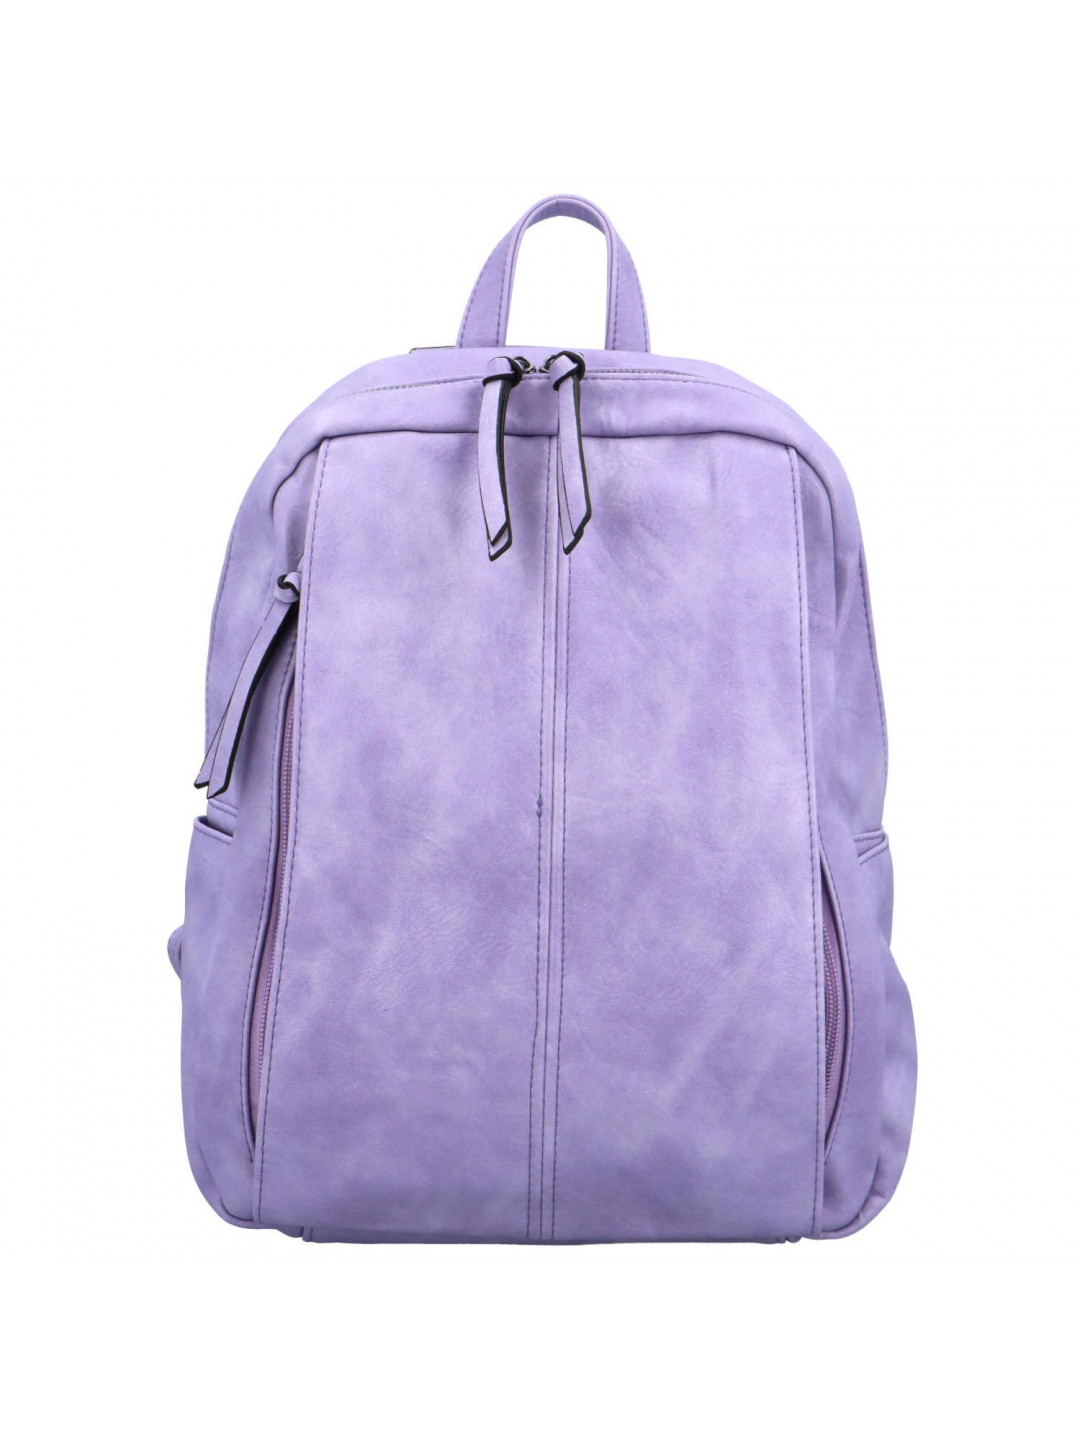 Dámský kabelko batoh fialový – Firenze Flassica